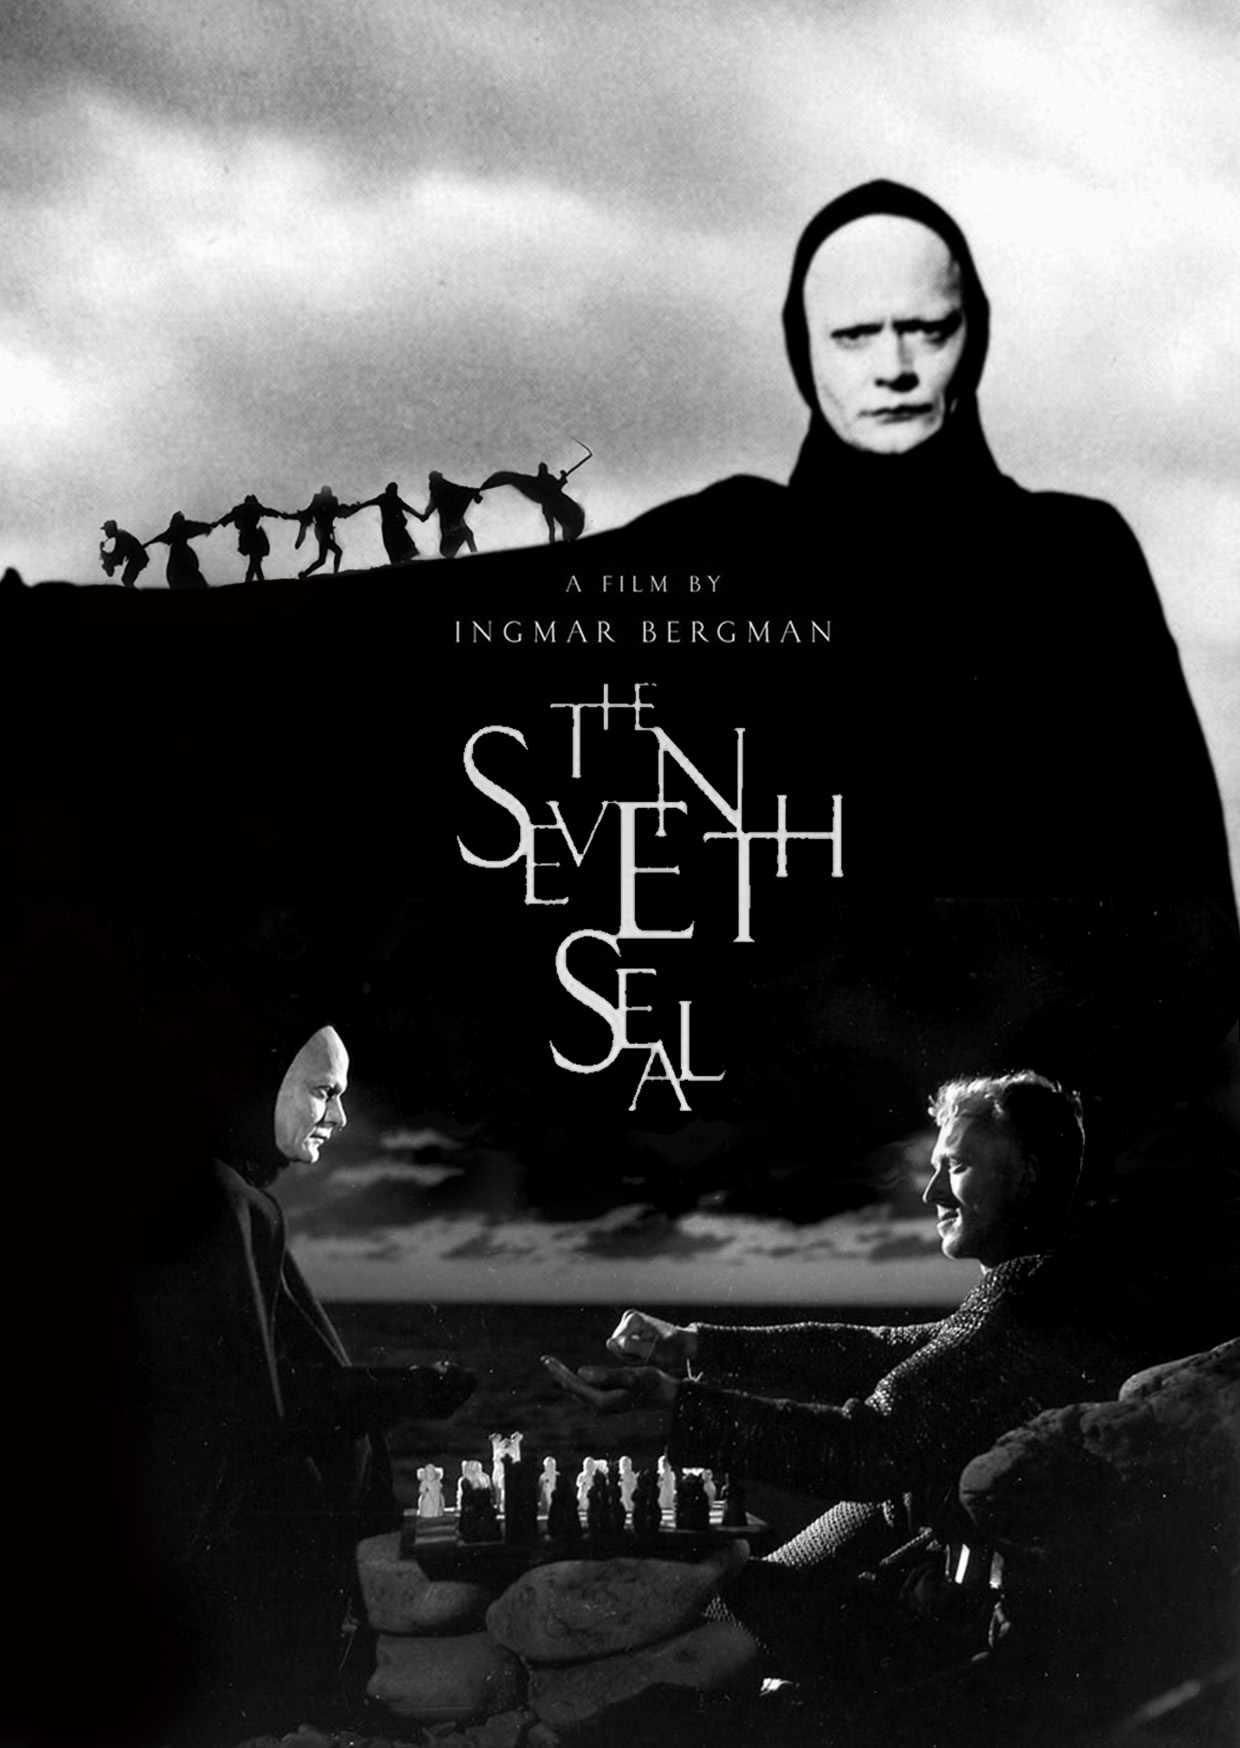 Aero Theatre Presents: 60th Anniversary of The Seventh Seal